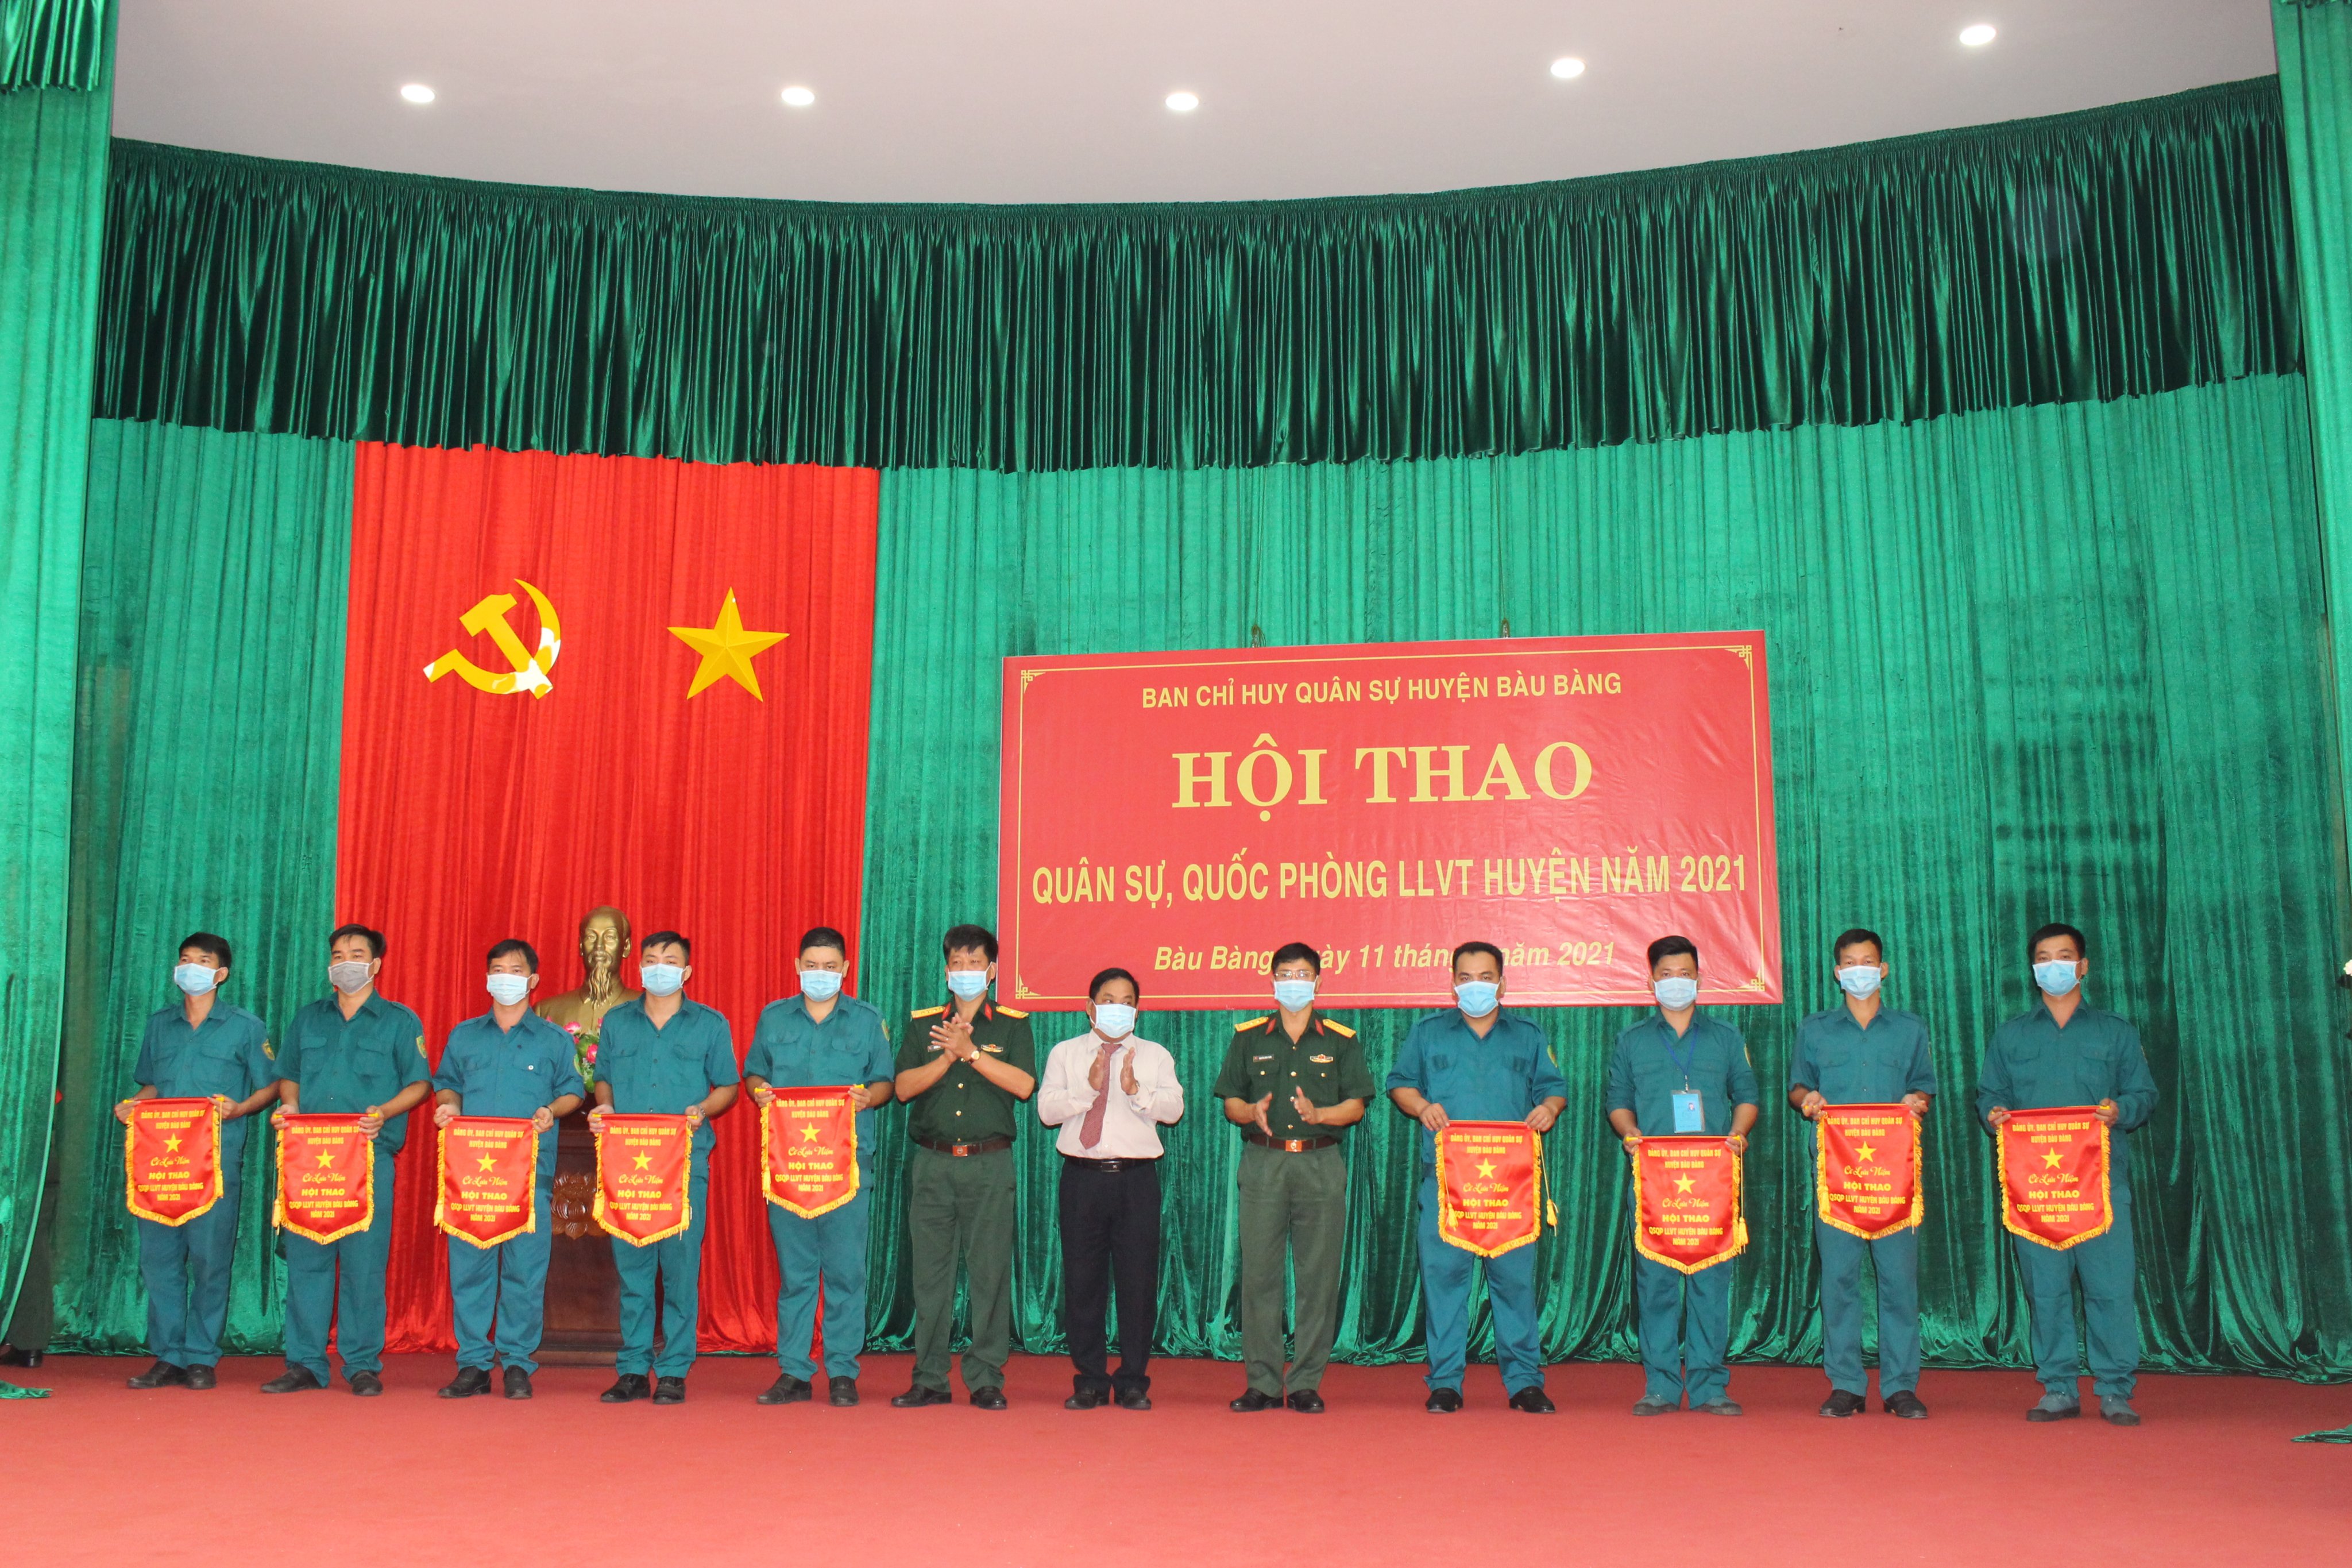 Ban CHQS huyện Bàu Bàng khai mạc Hội thao quân sự - quốc phòng lực lượng vũ trang năm 2021